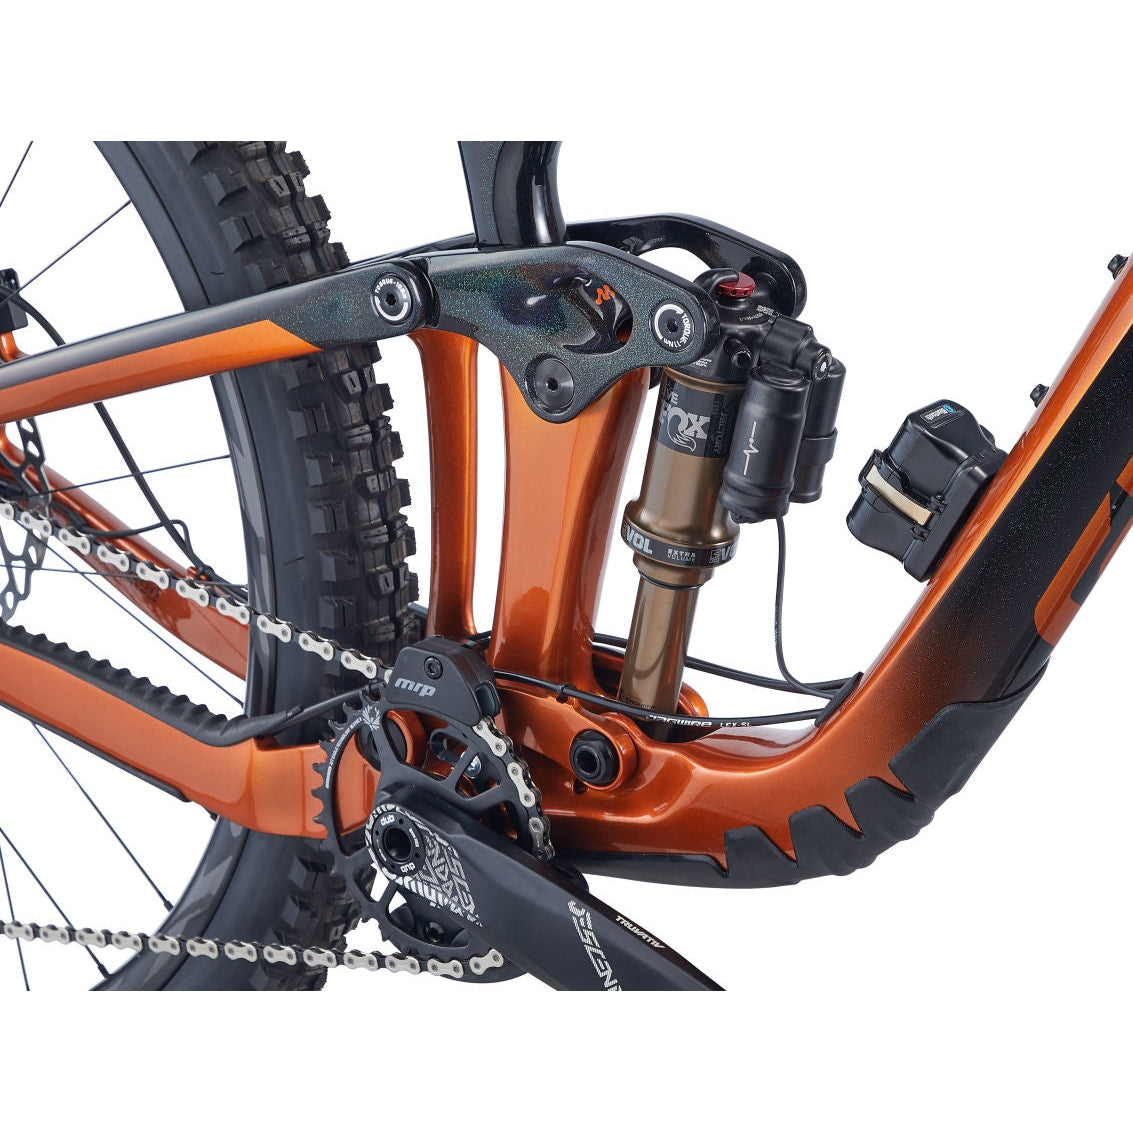 Giant Reign Advanced Pro 29 1 Carbon Mountain Bike - Bikes - Bicycle Warehouse